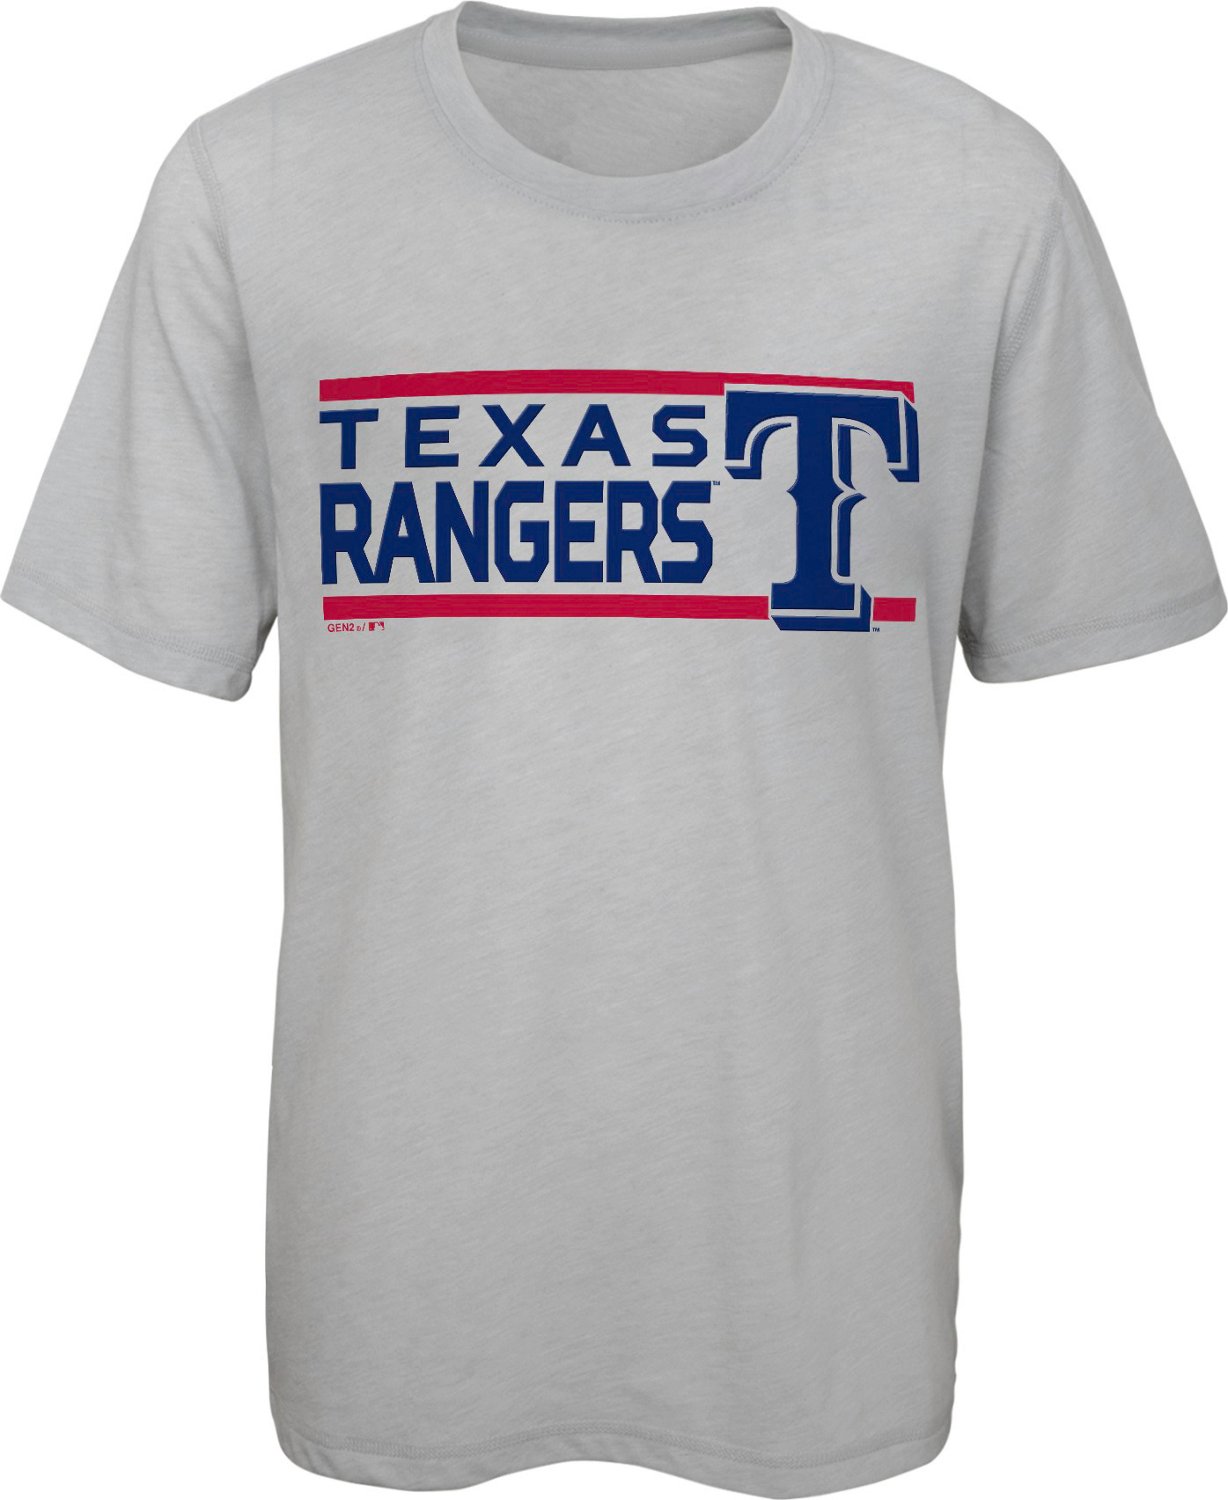 boys texas rangers jersey